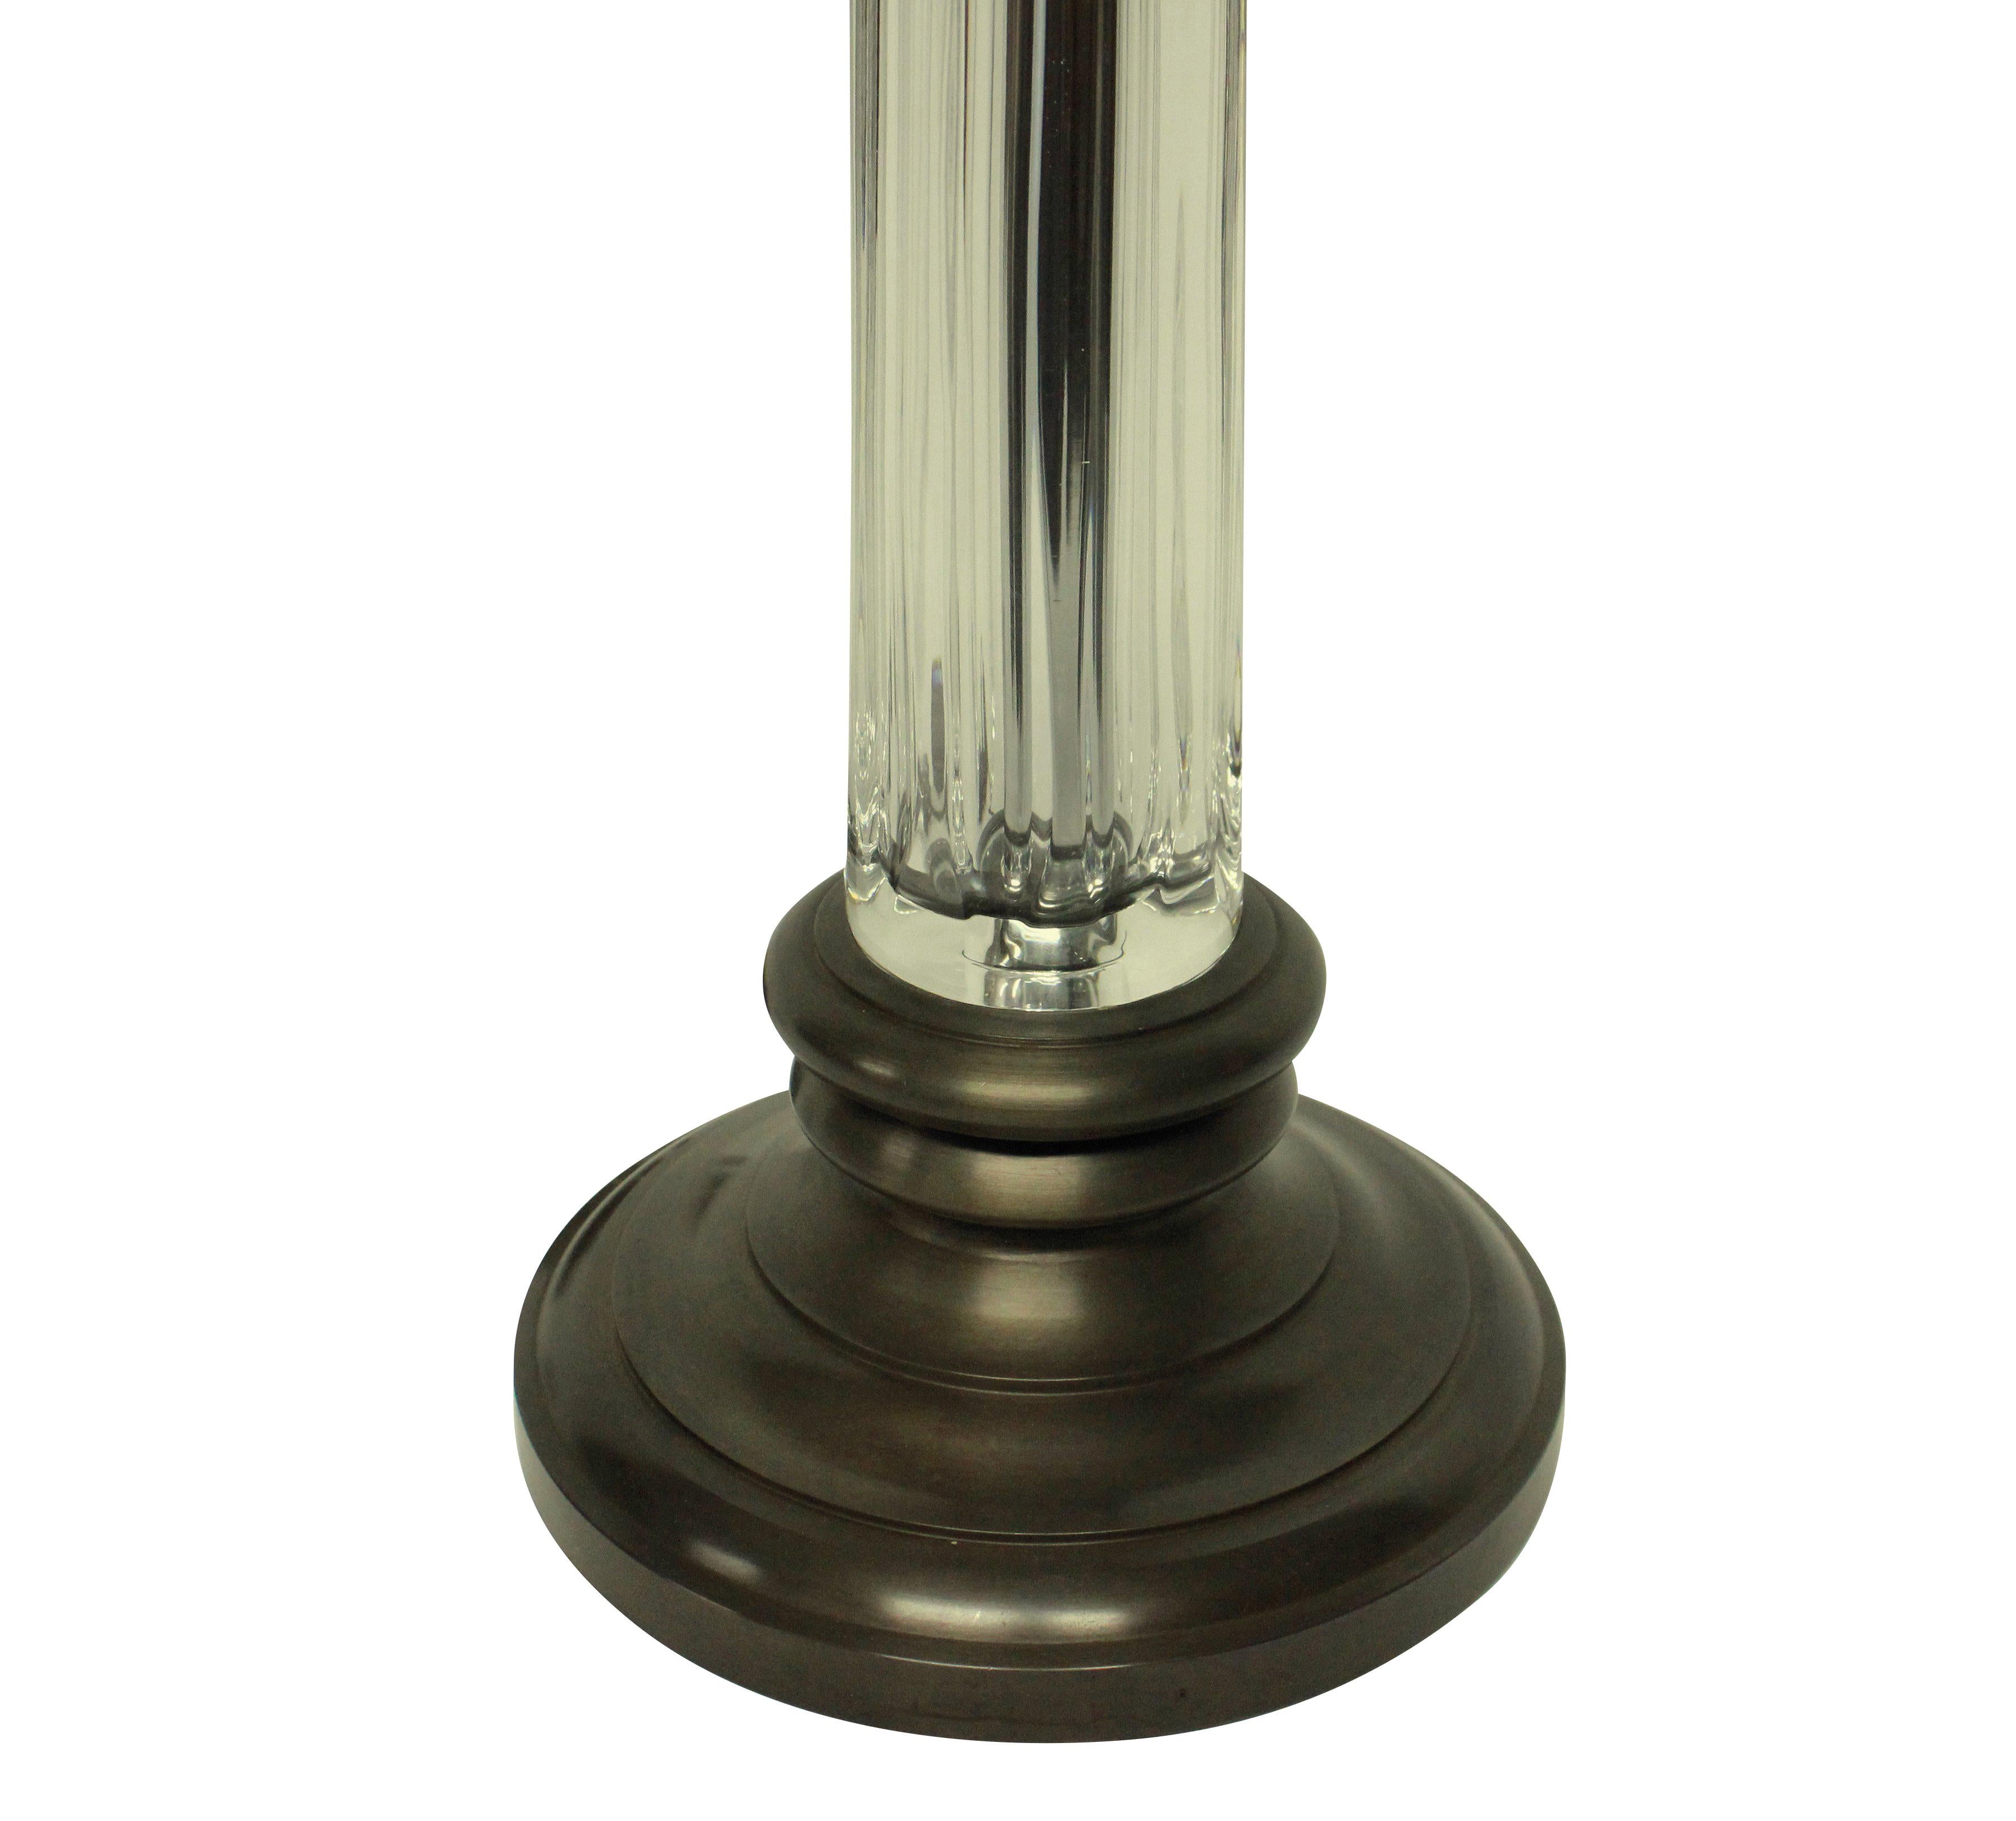 Une paire de lampes anglaises à colonne en verre taillé, avec bases et accessoires en bronze. Nouvellement électrifié avec des cordons de soie bruns.

Prix ici pour une paire.